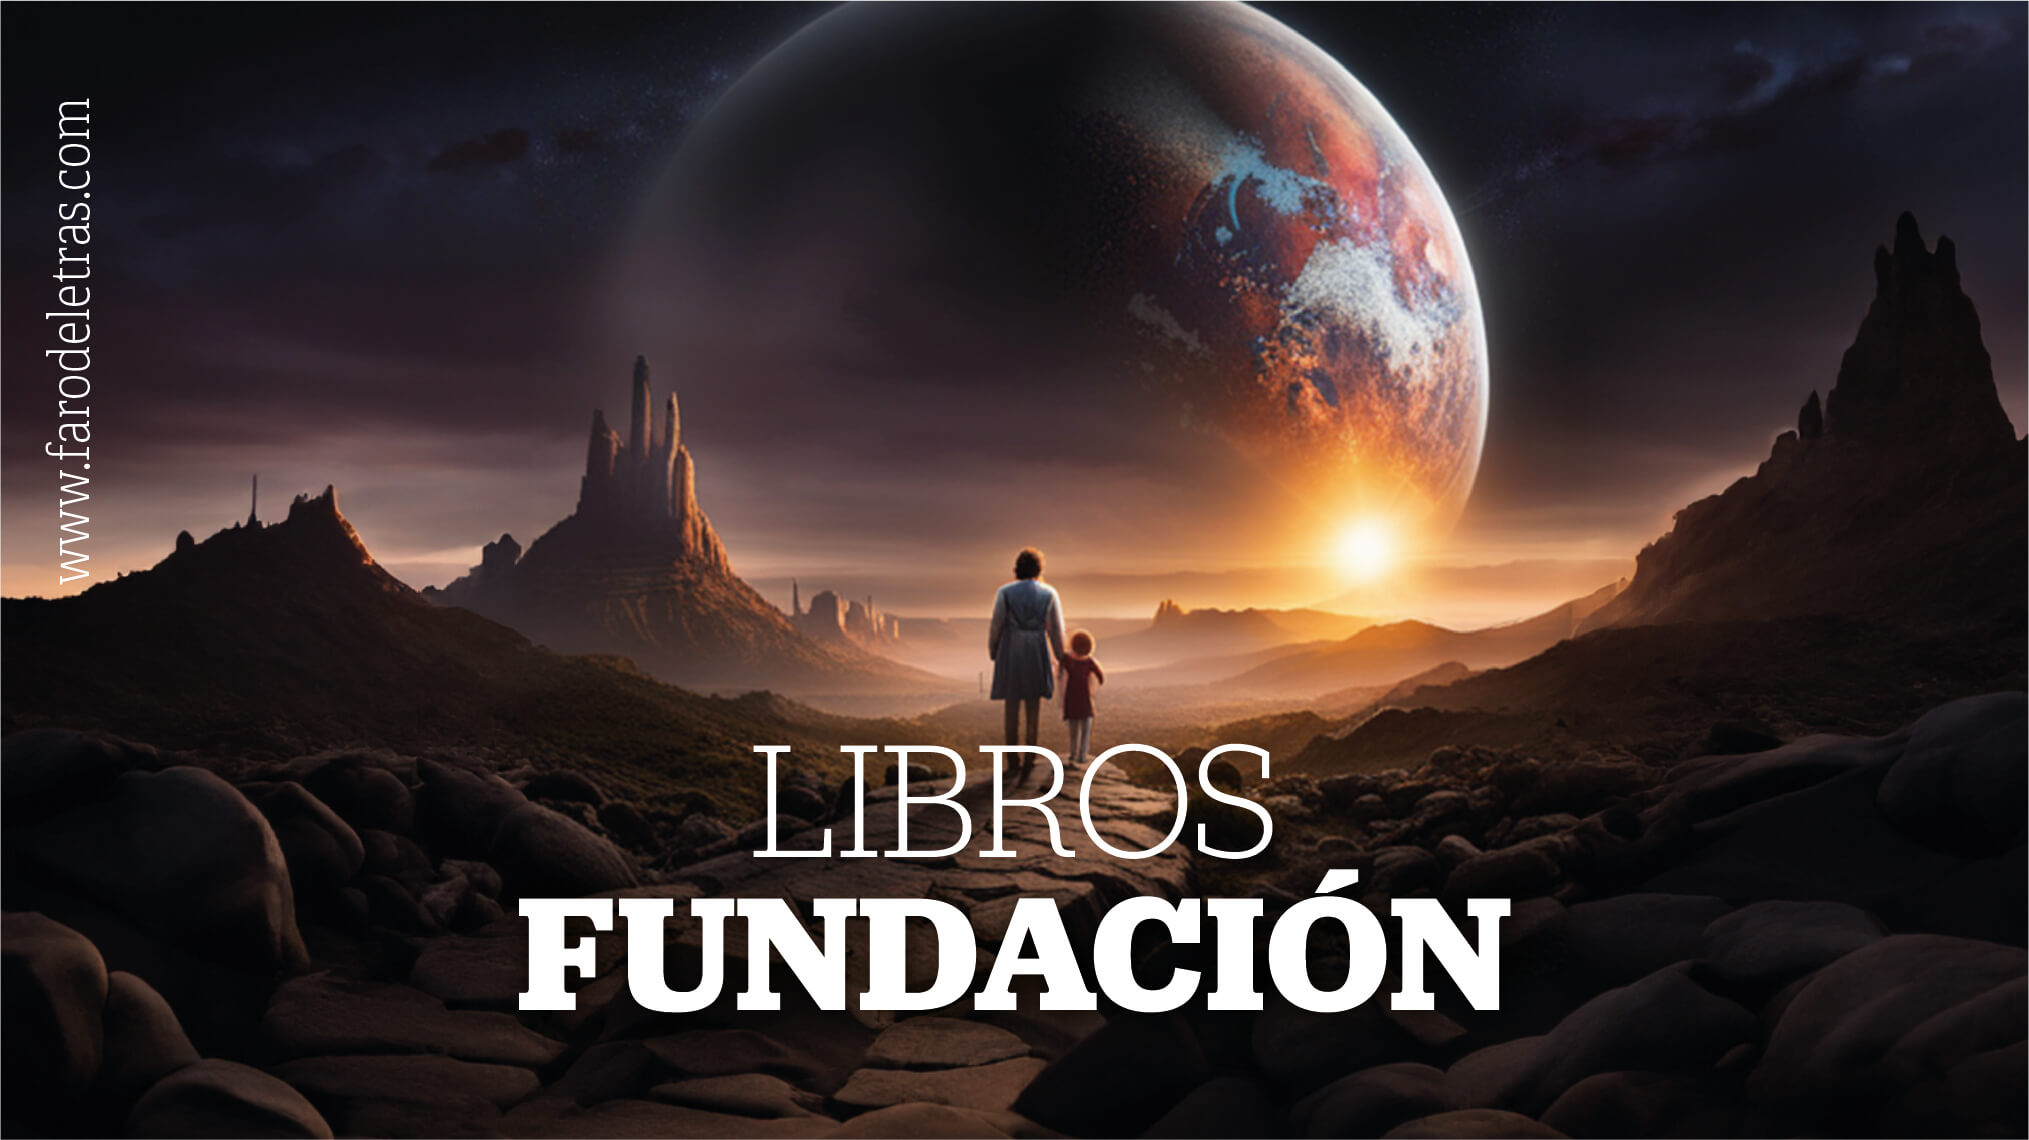 LIBROS DE LA SAGA FUNDACIÓN ISAAC ASIMOV